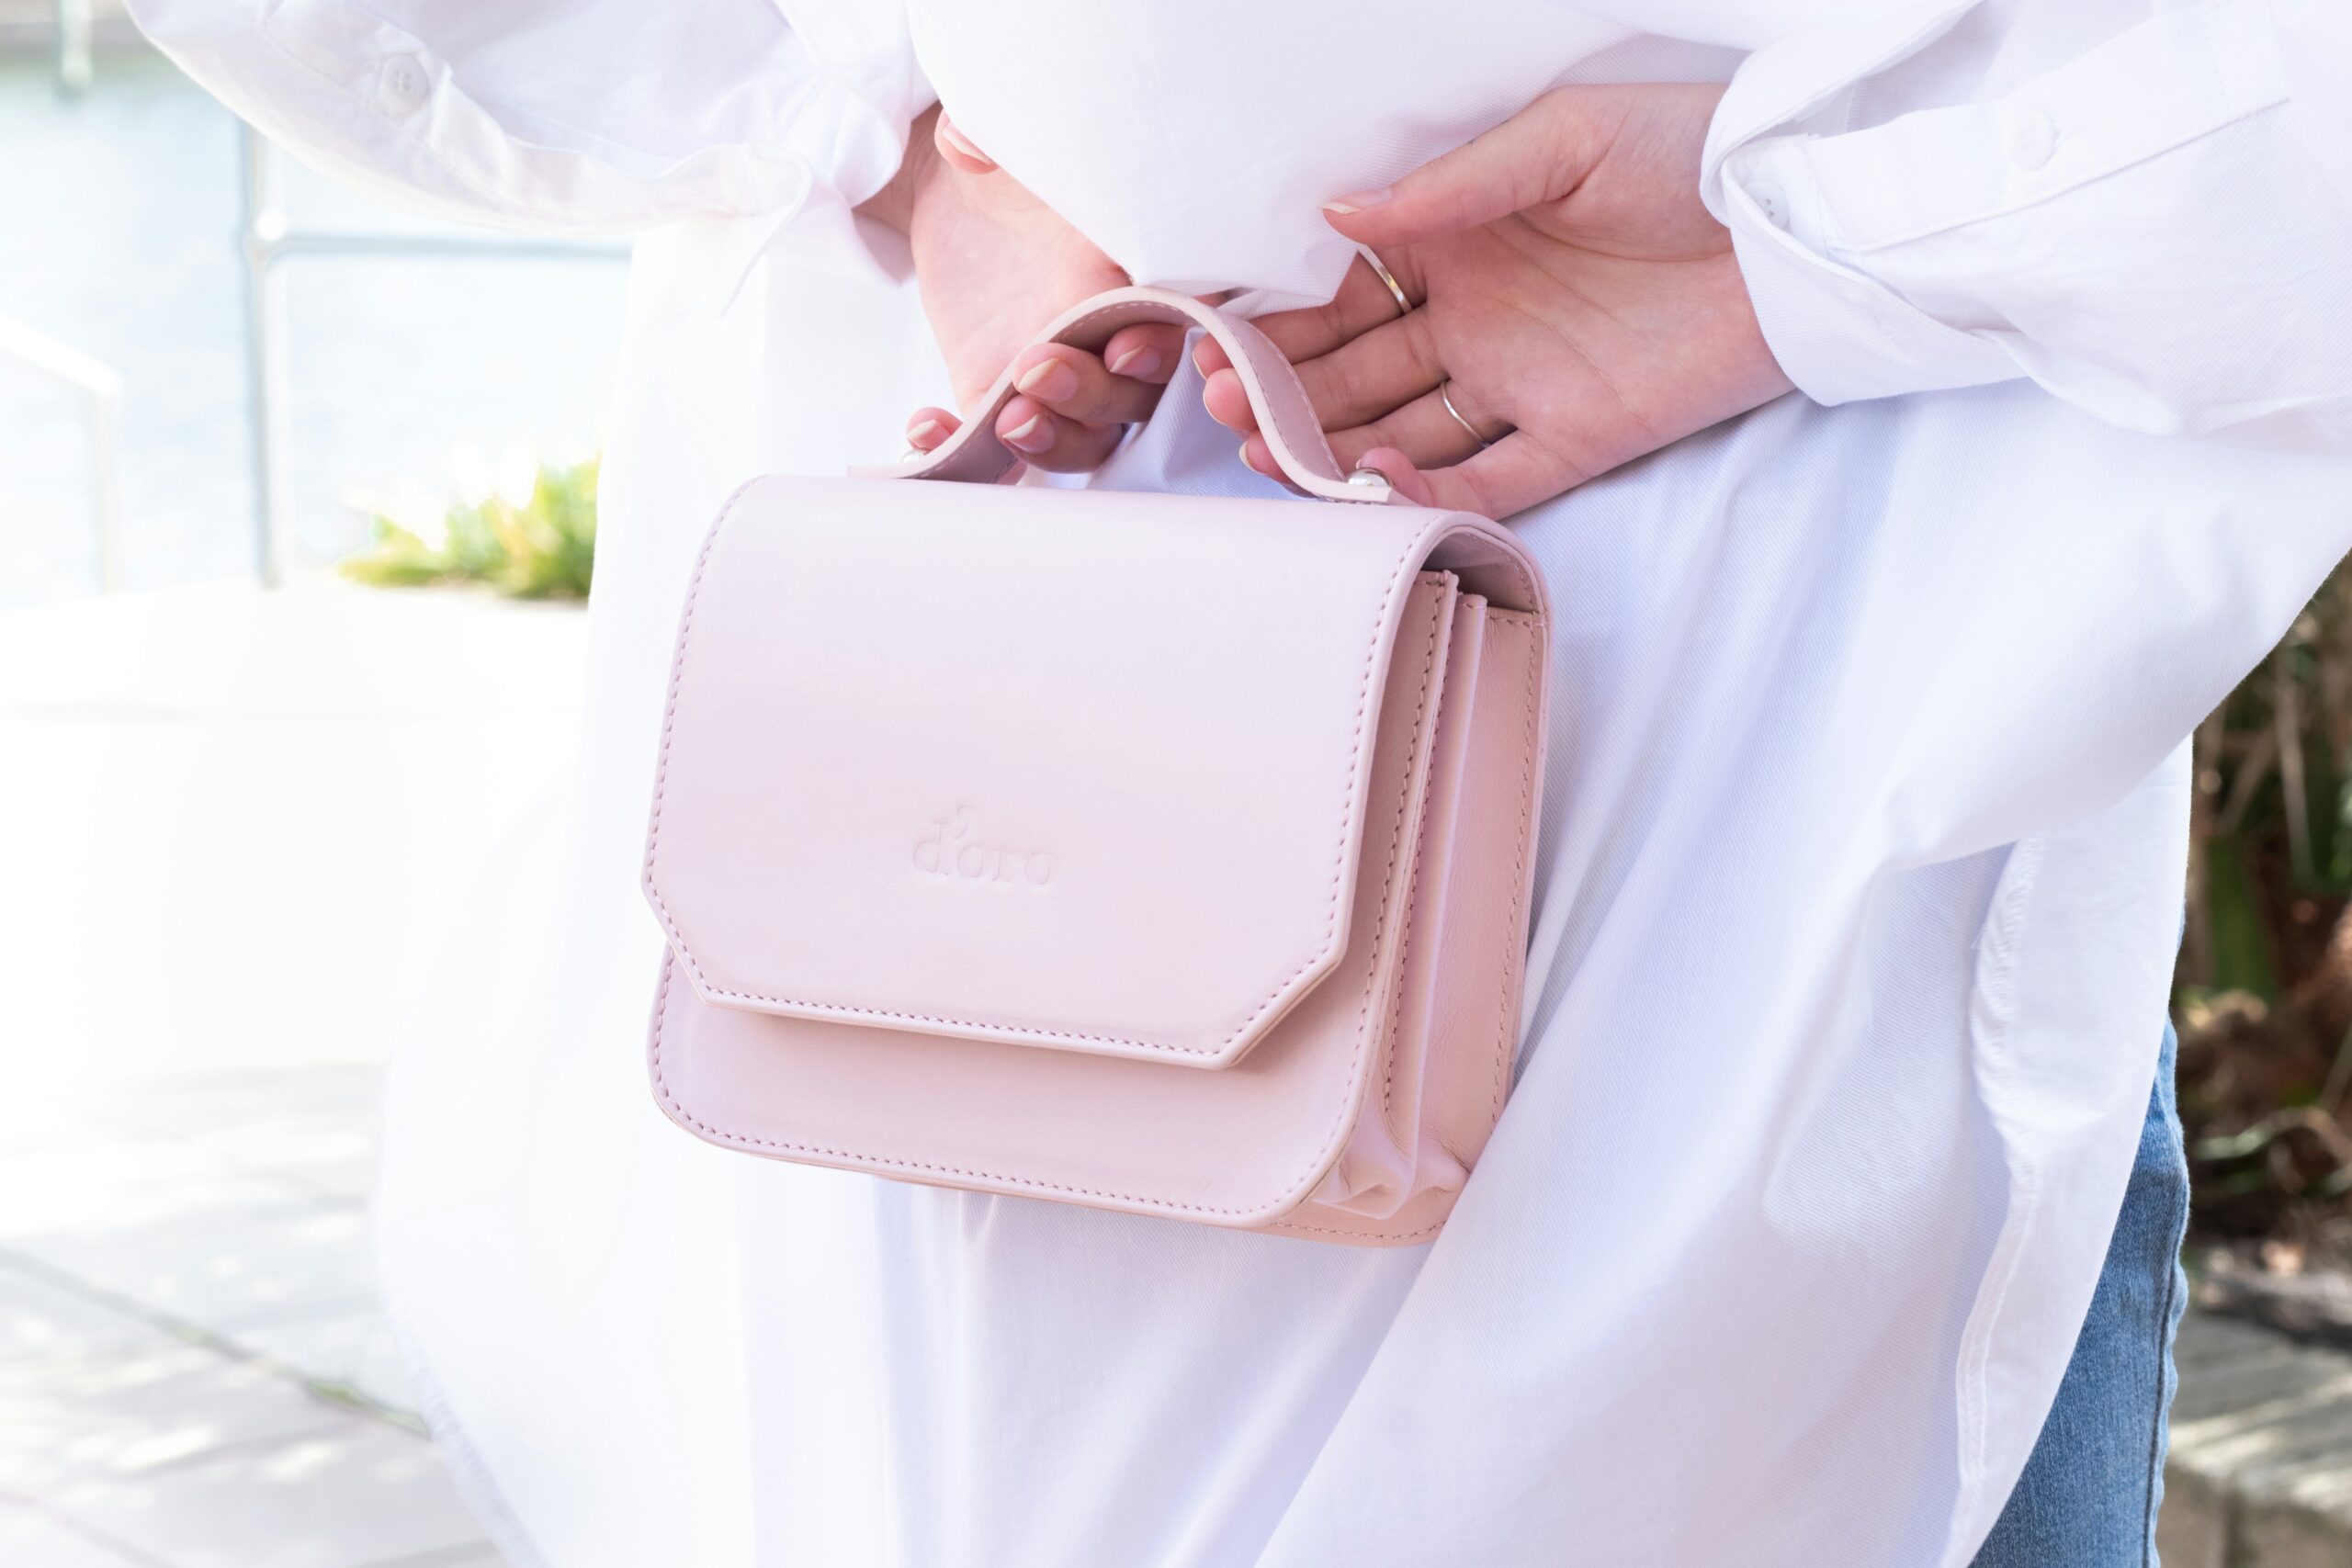 découvrez notre collection de sacs à main tendance pour femme. trouvez le handbag parfait pour compléter votre tenue et ajouter une touche d'élégance à votre style.